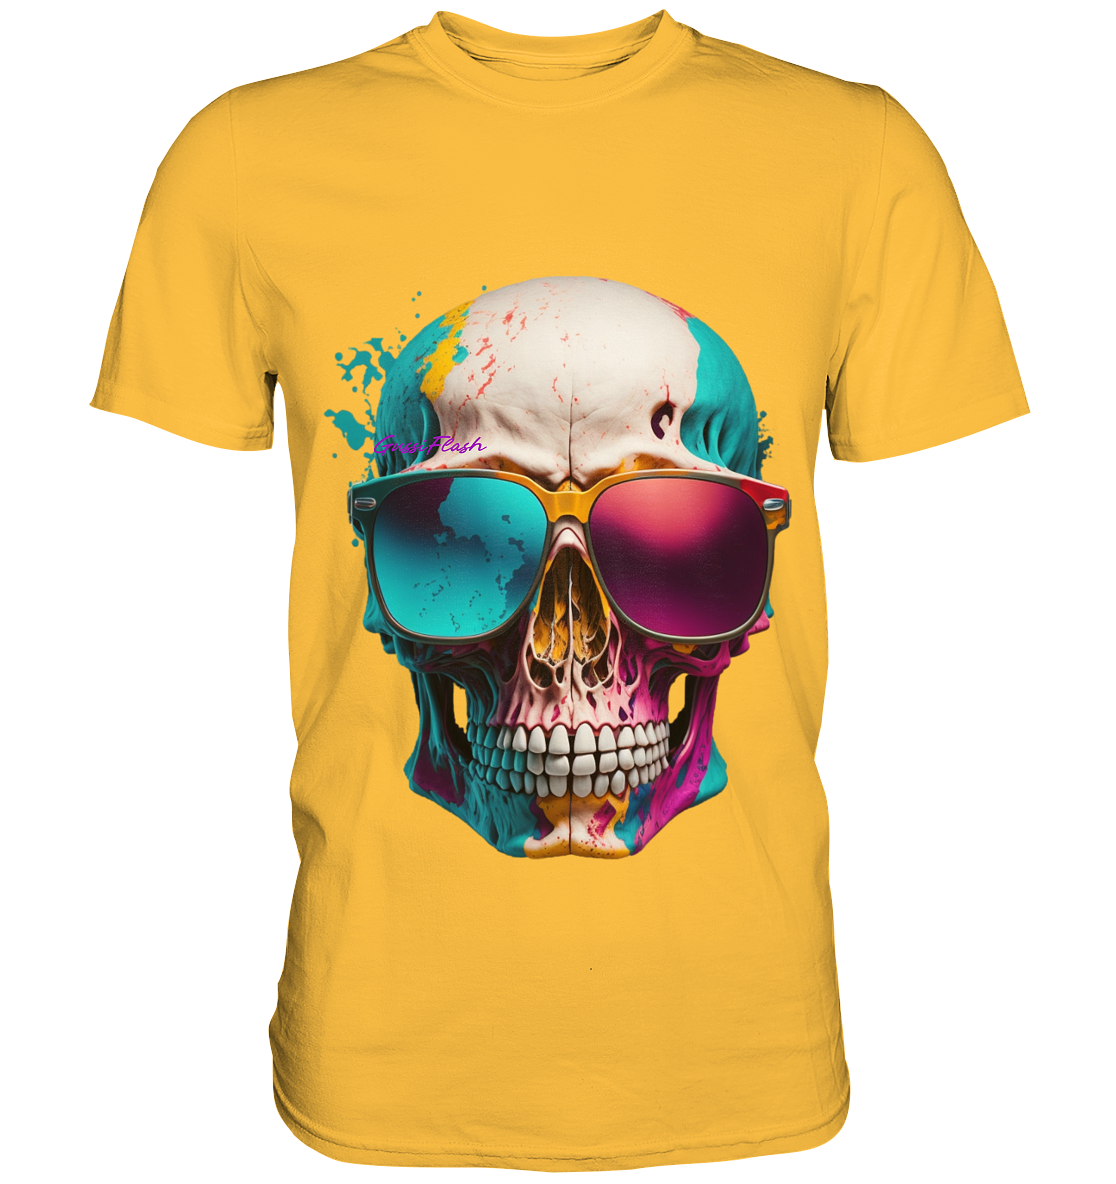 Farbiger Totenkopf mit Sonnenbrille und vielen Zähnen - Premium Shirt